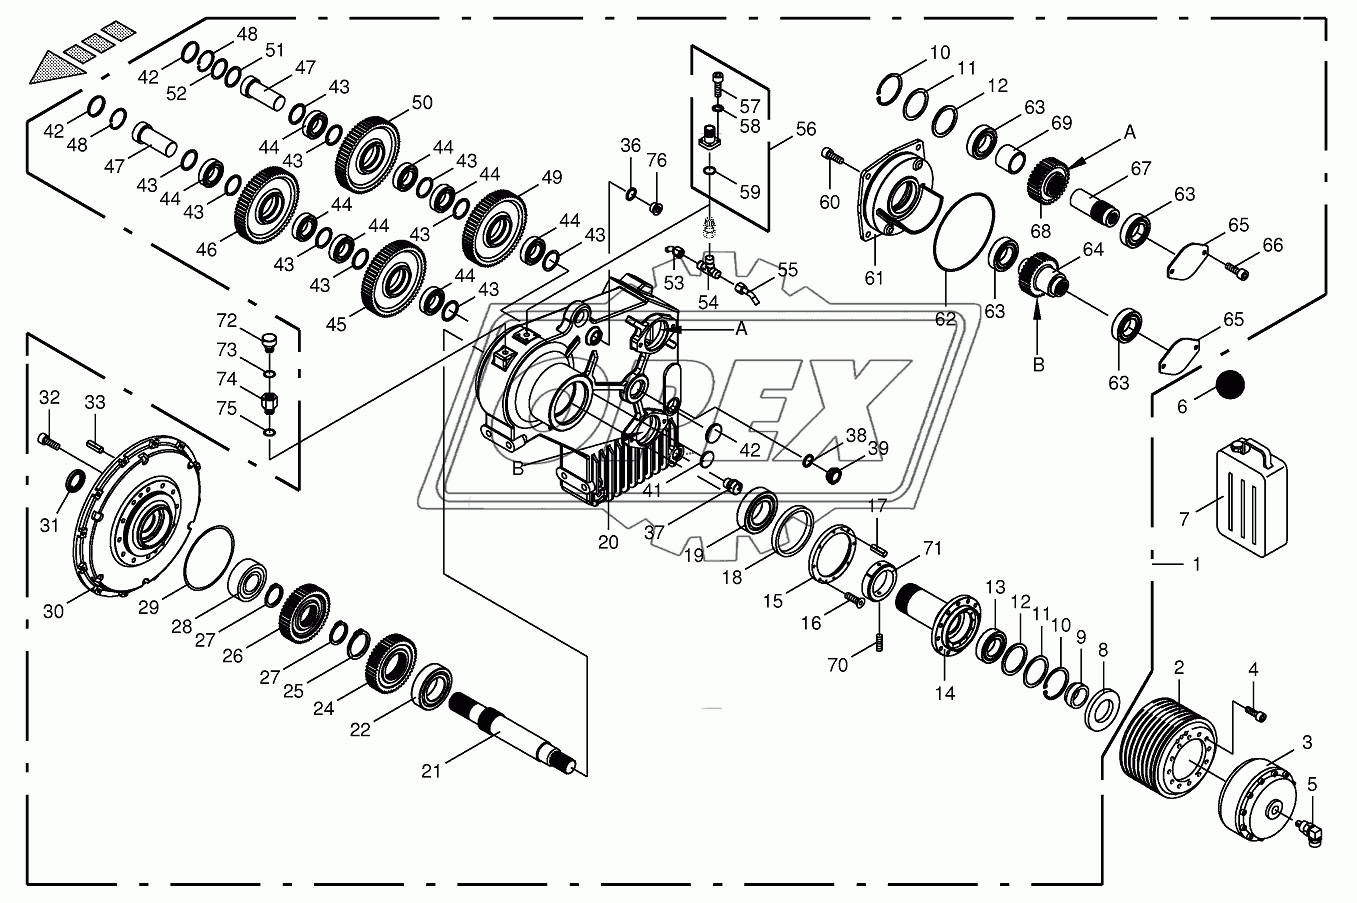 Motor output gear